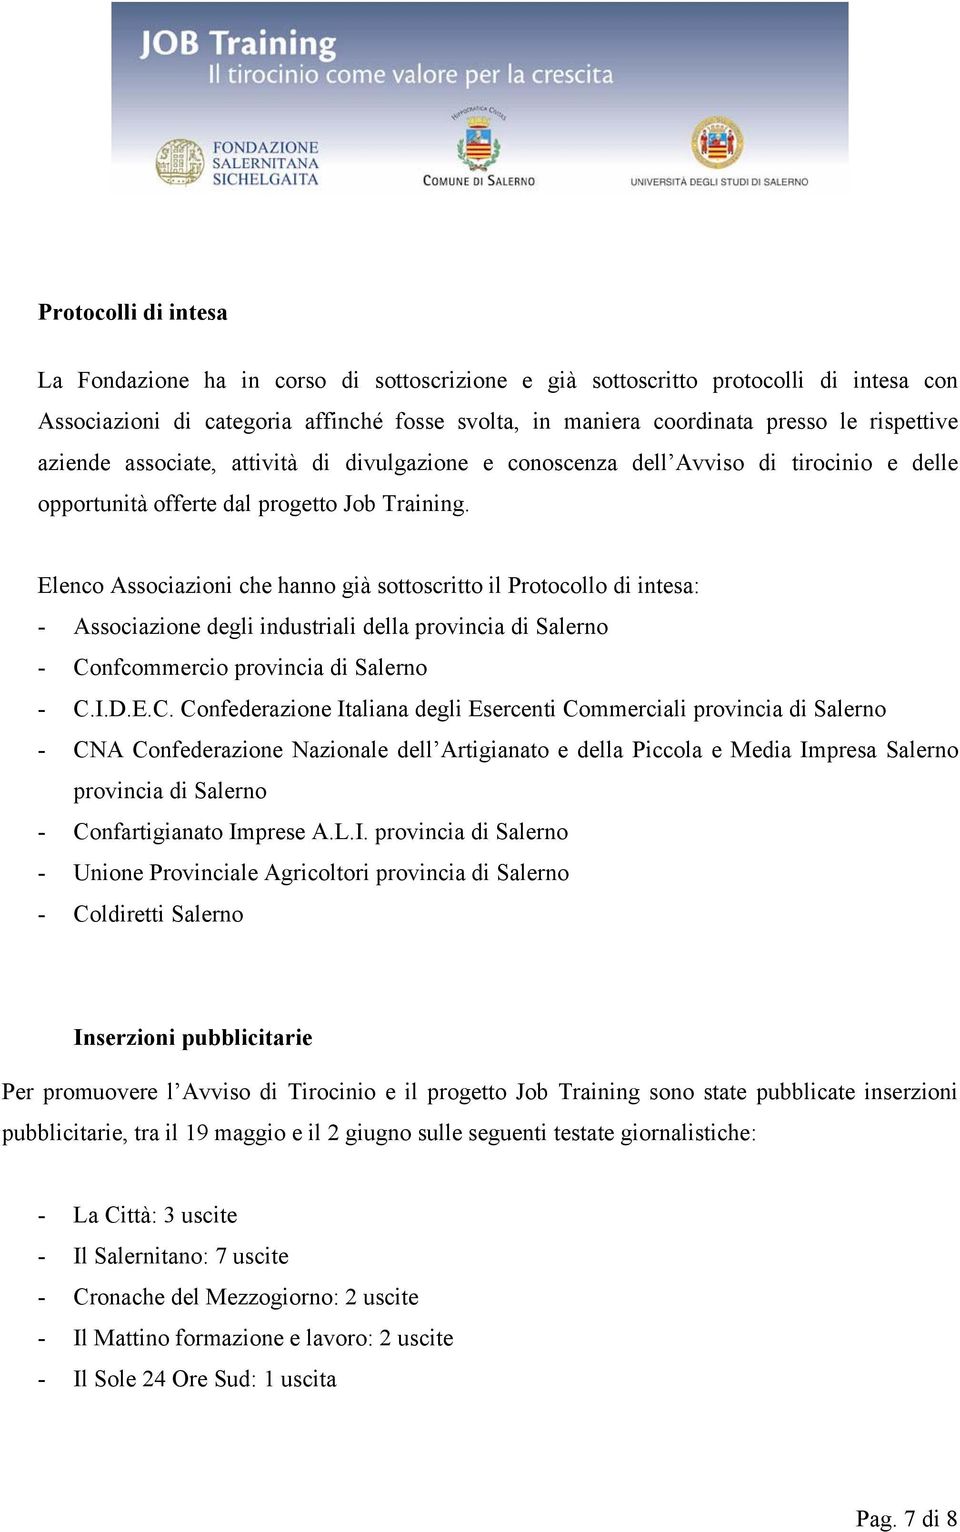 Elenco Associazioni che hanno già sottoscritto il Protocollo di intesa: - Associazione degli industriali della provincia di Salerno - Co